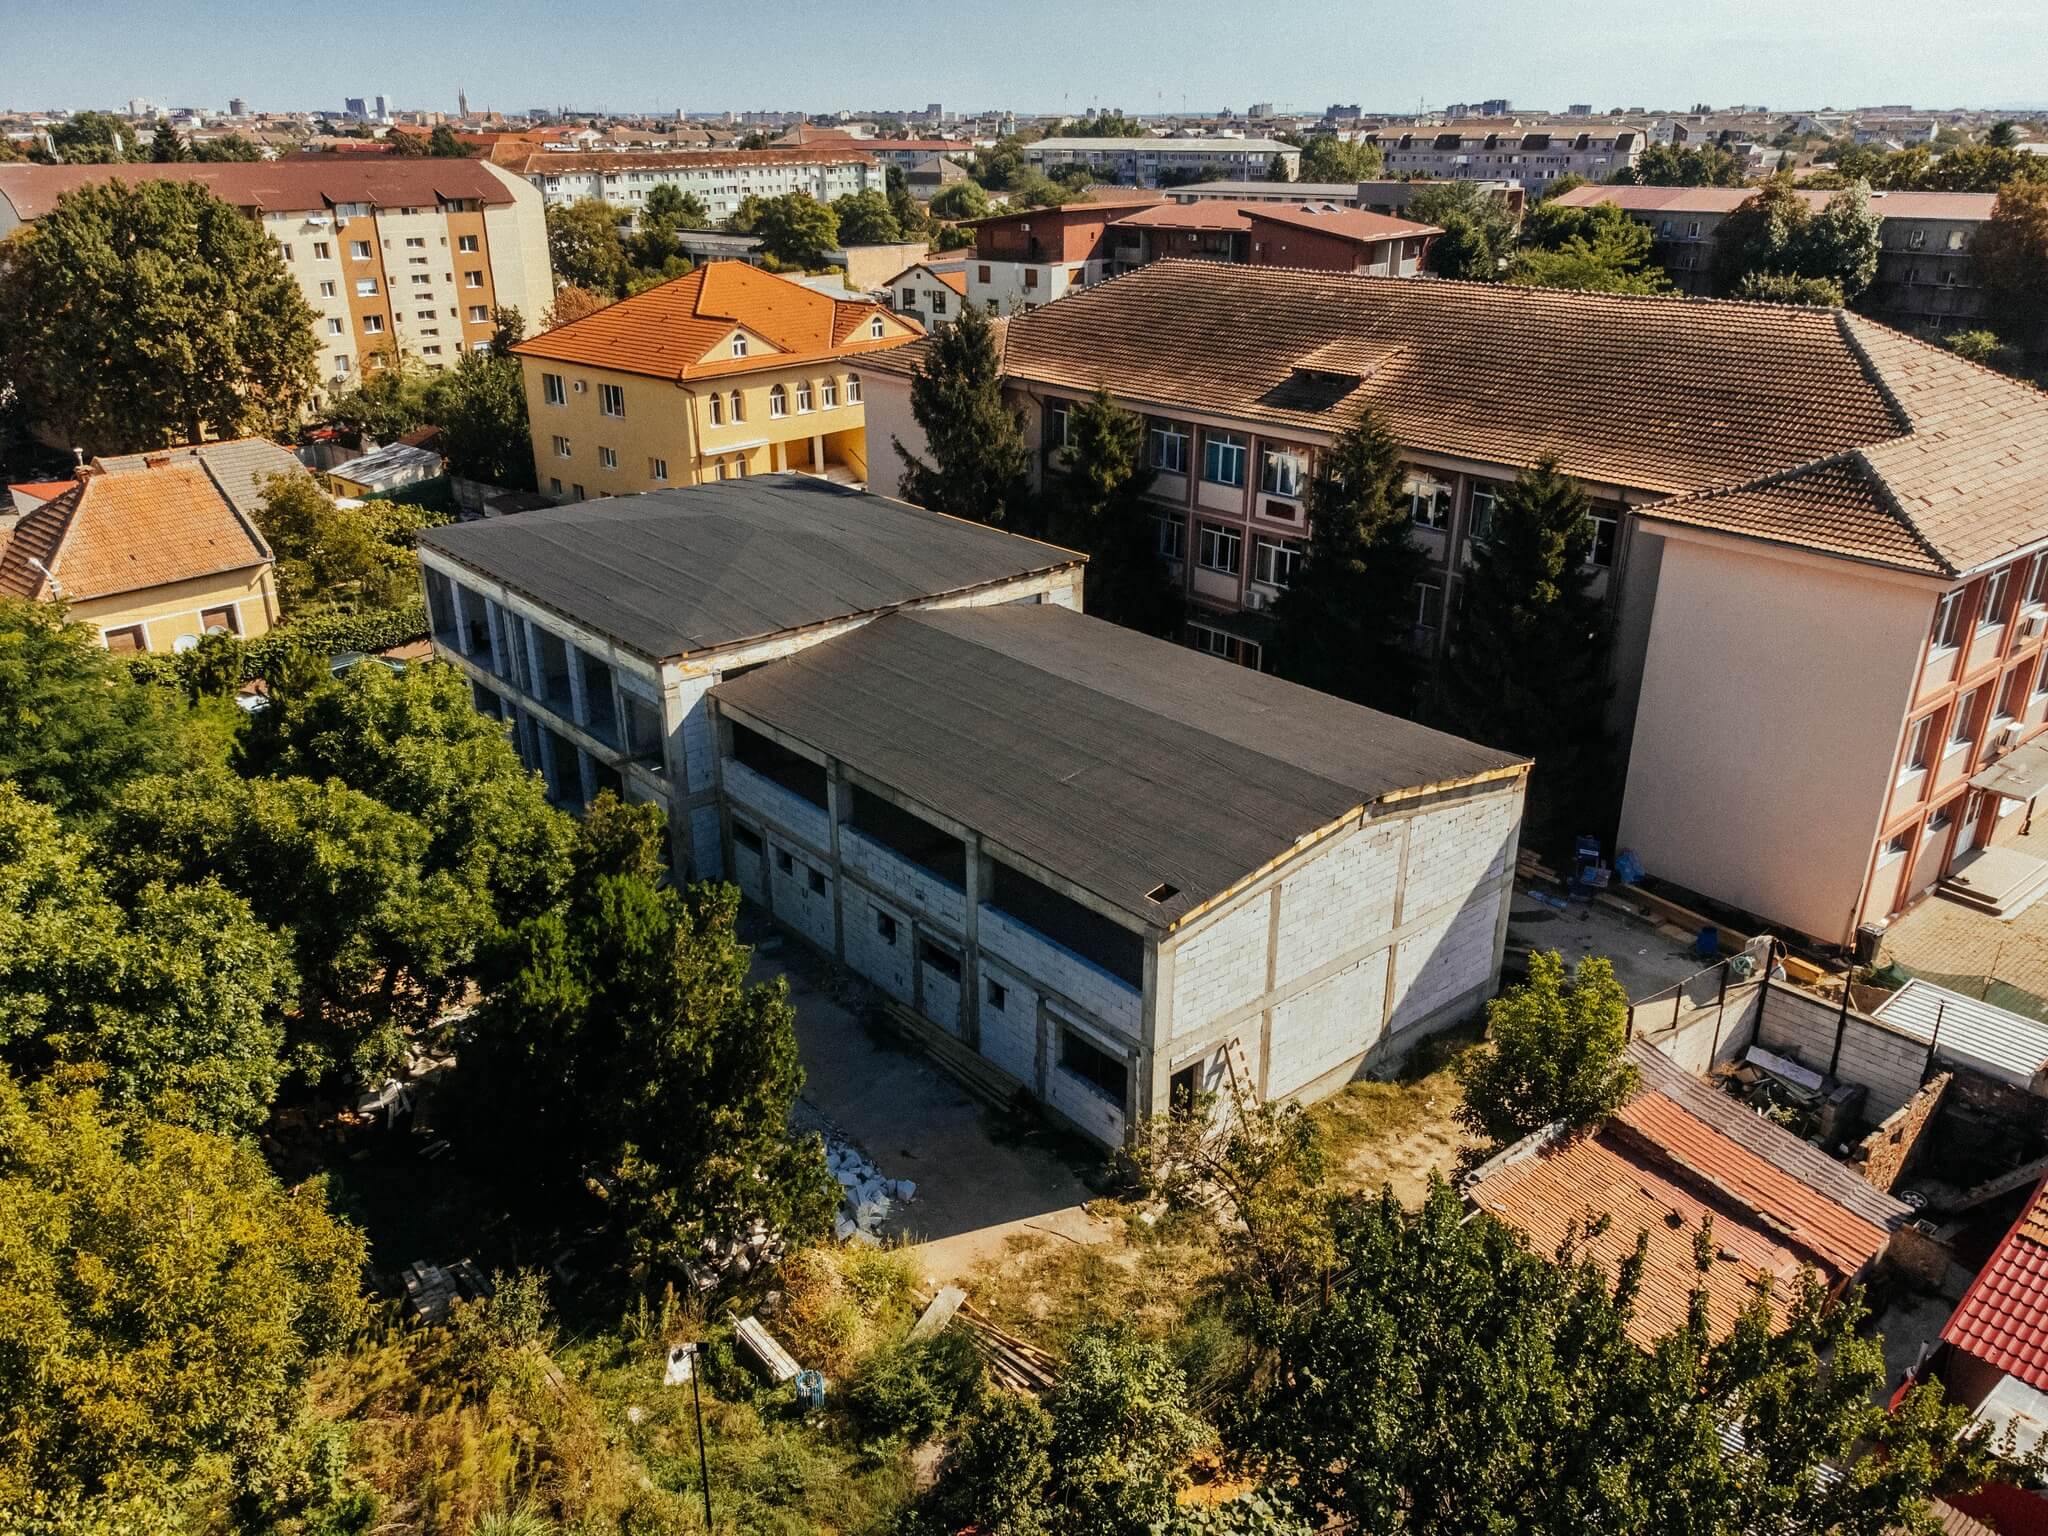 Am ridicat deja noul corp de clădire de la școala 13 din Timișoara